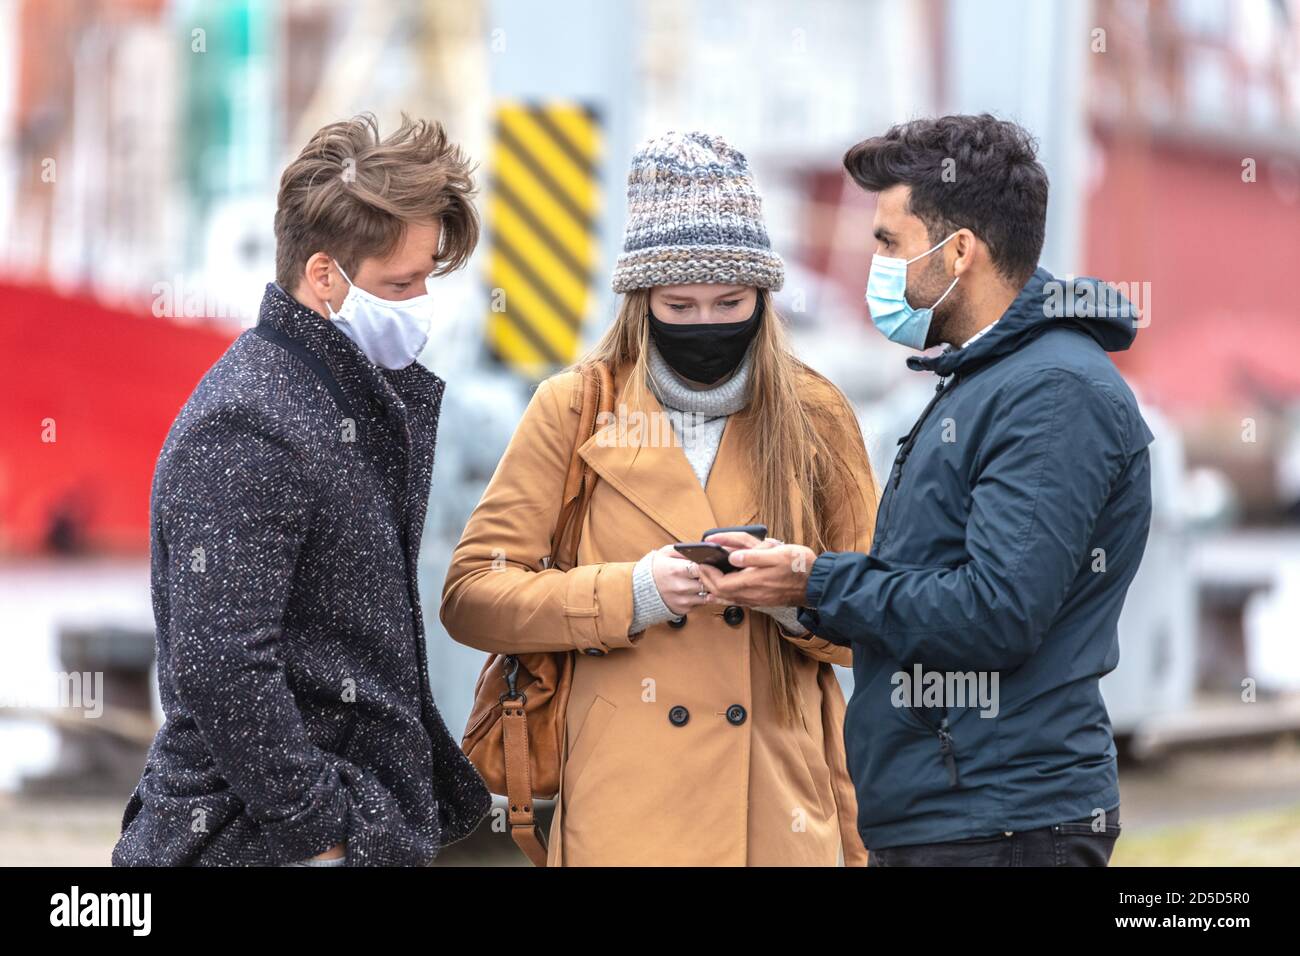 Zwei Männer und eine Frau in Corona-Zeit, mit alltäglichen Masken, in der kalten Jahreszeit in der Stadt unterwegs. Stock Photo